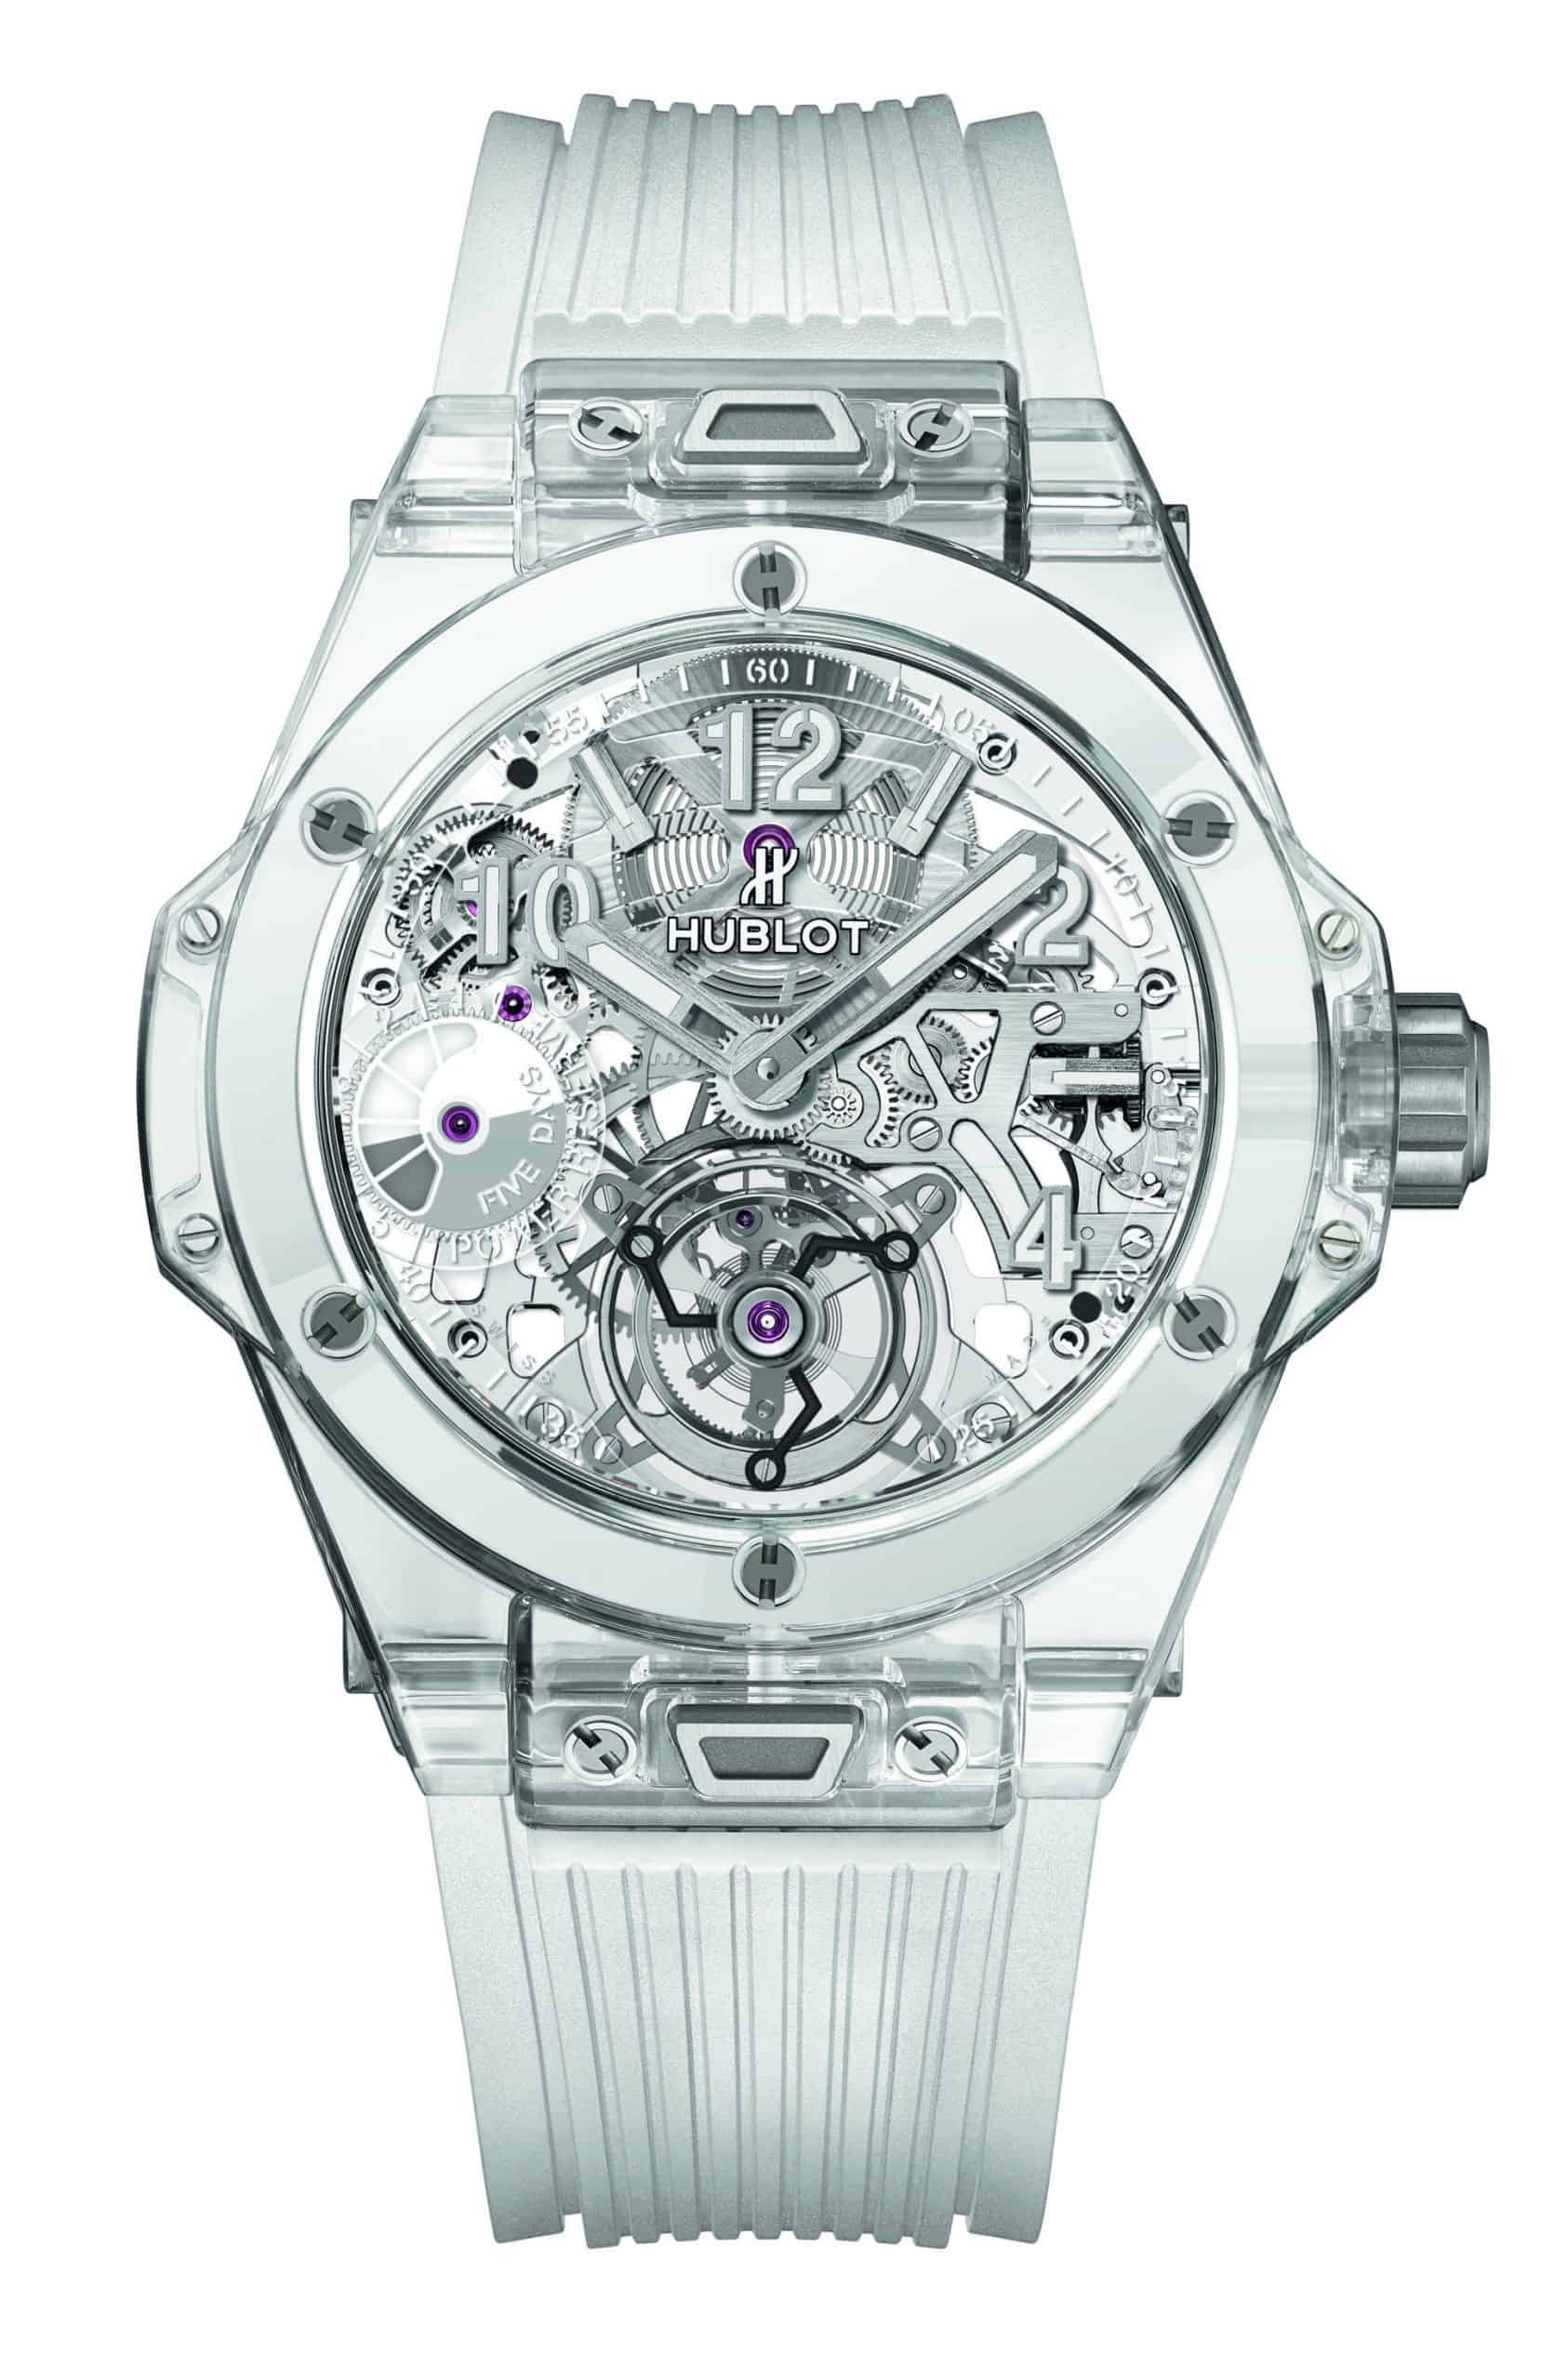 Die Hublot Big Bang Tourbillon mit dem skelettierten Uhrwerk